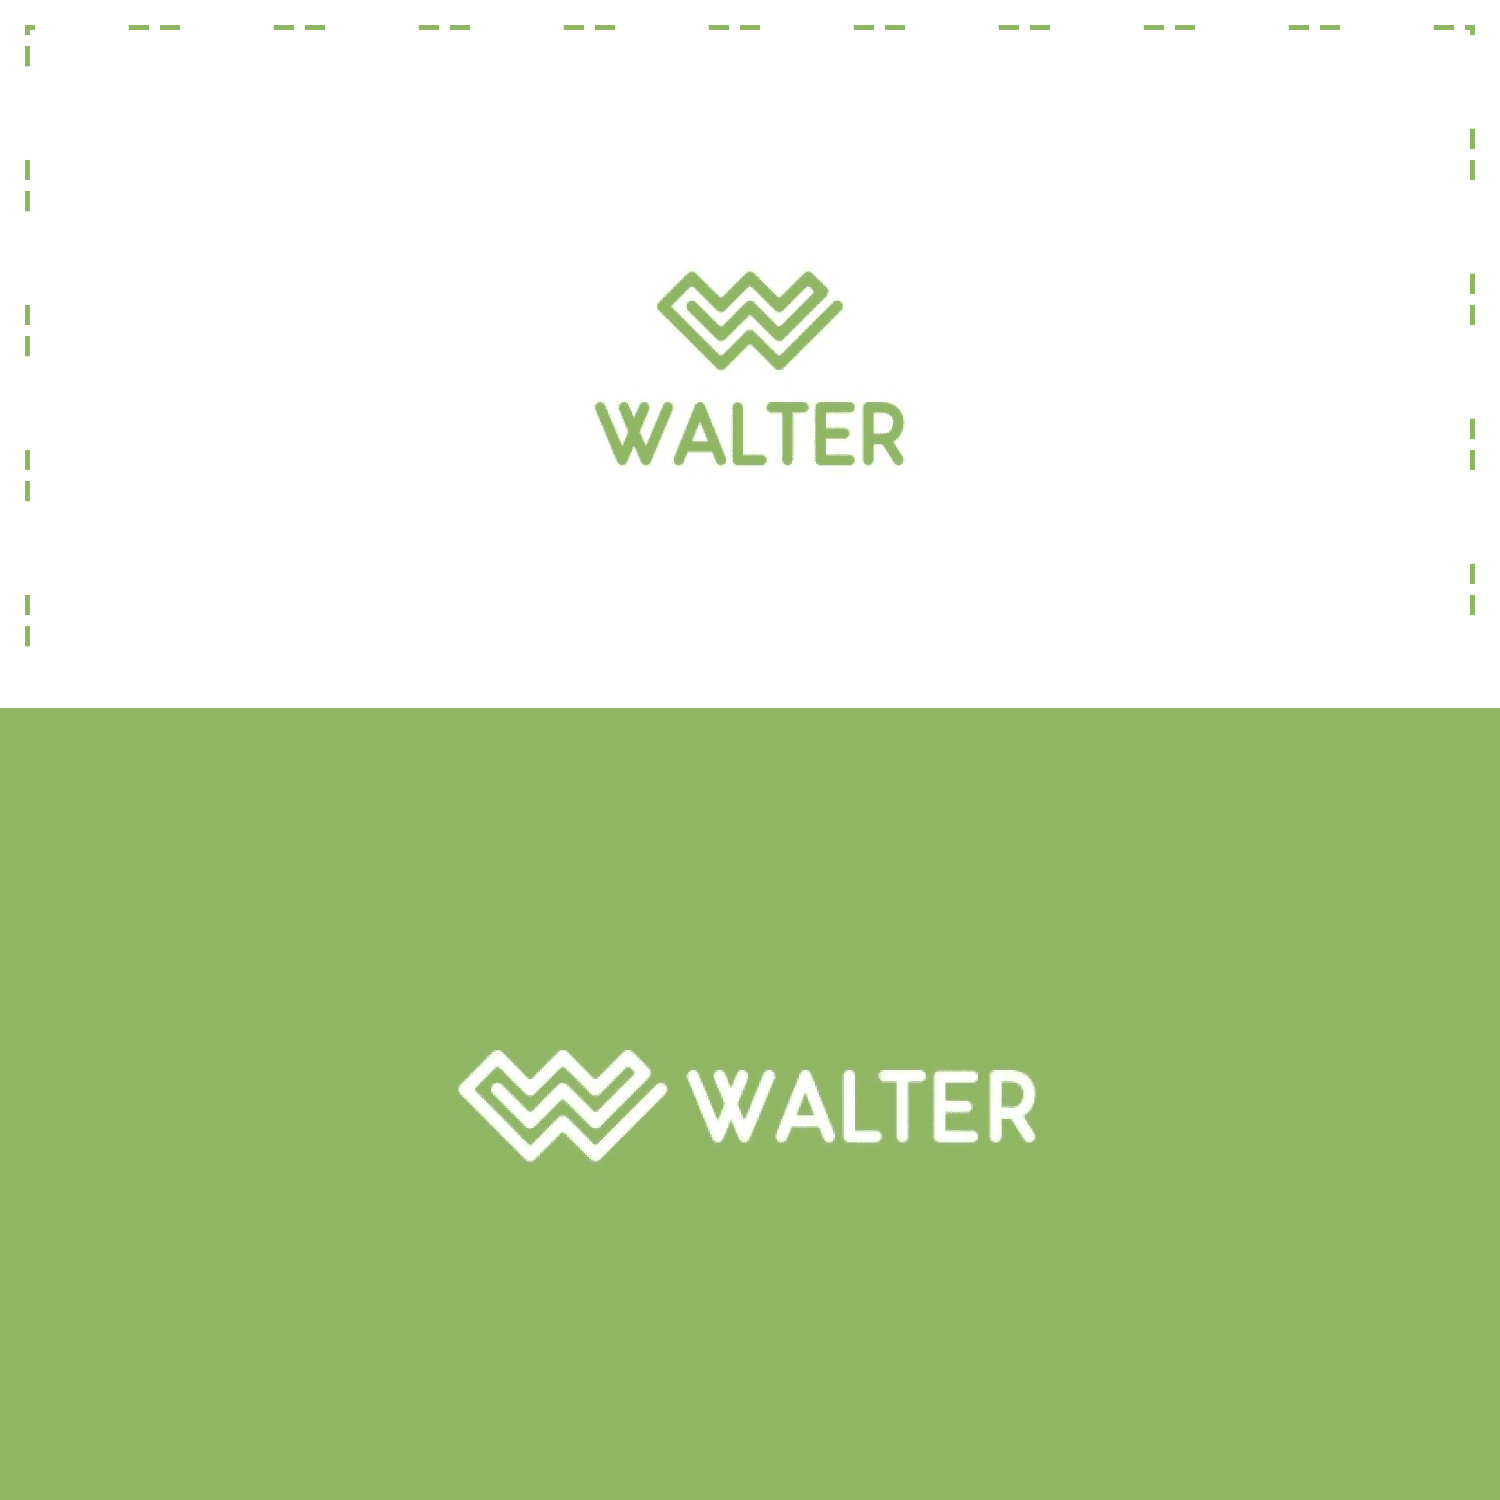 Walter Letter W Logo.